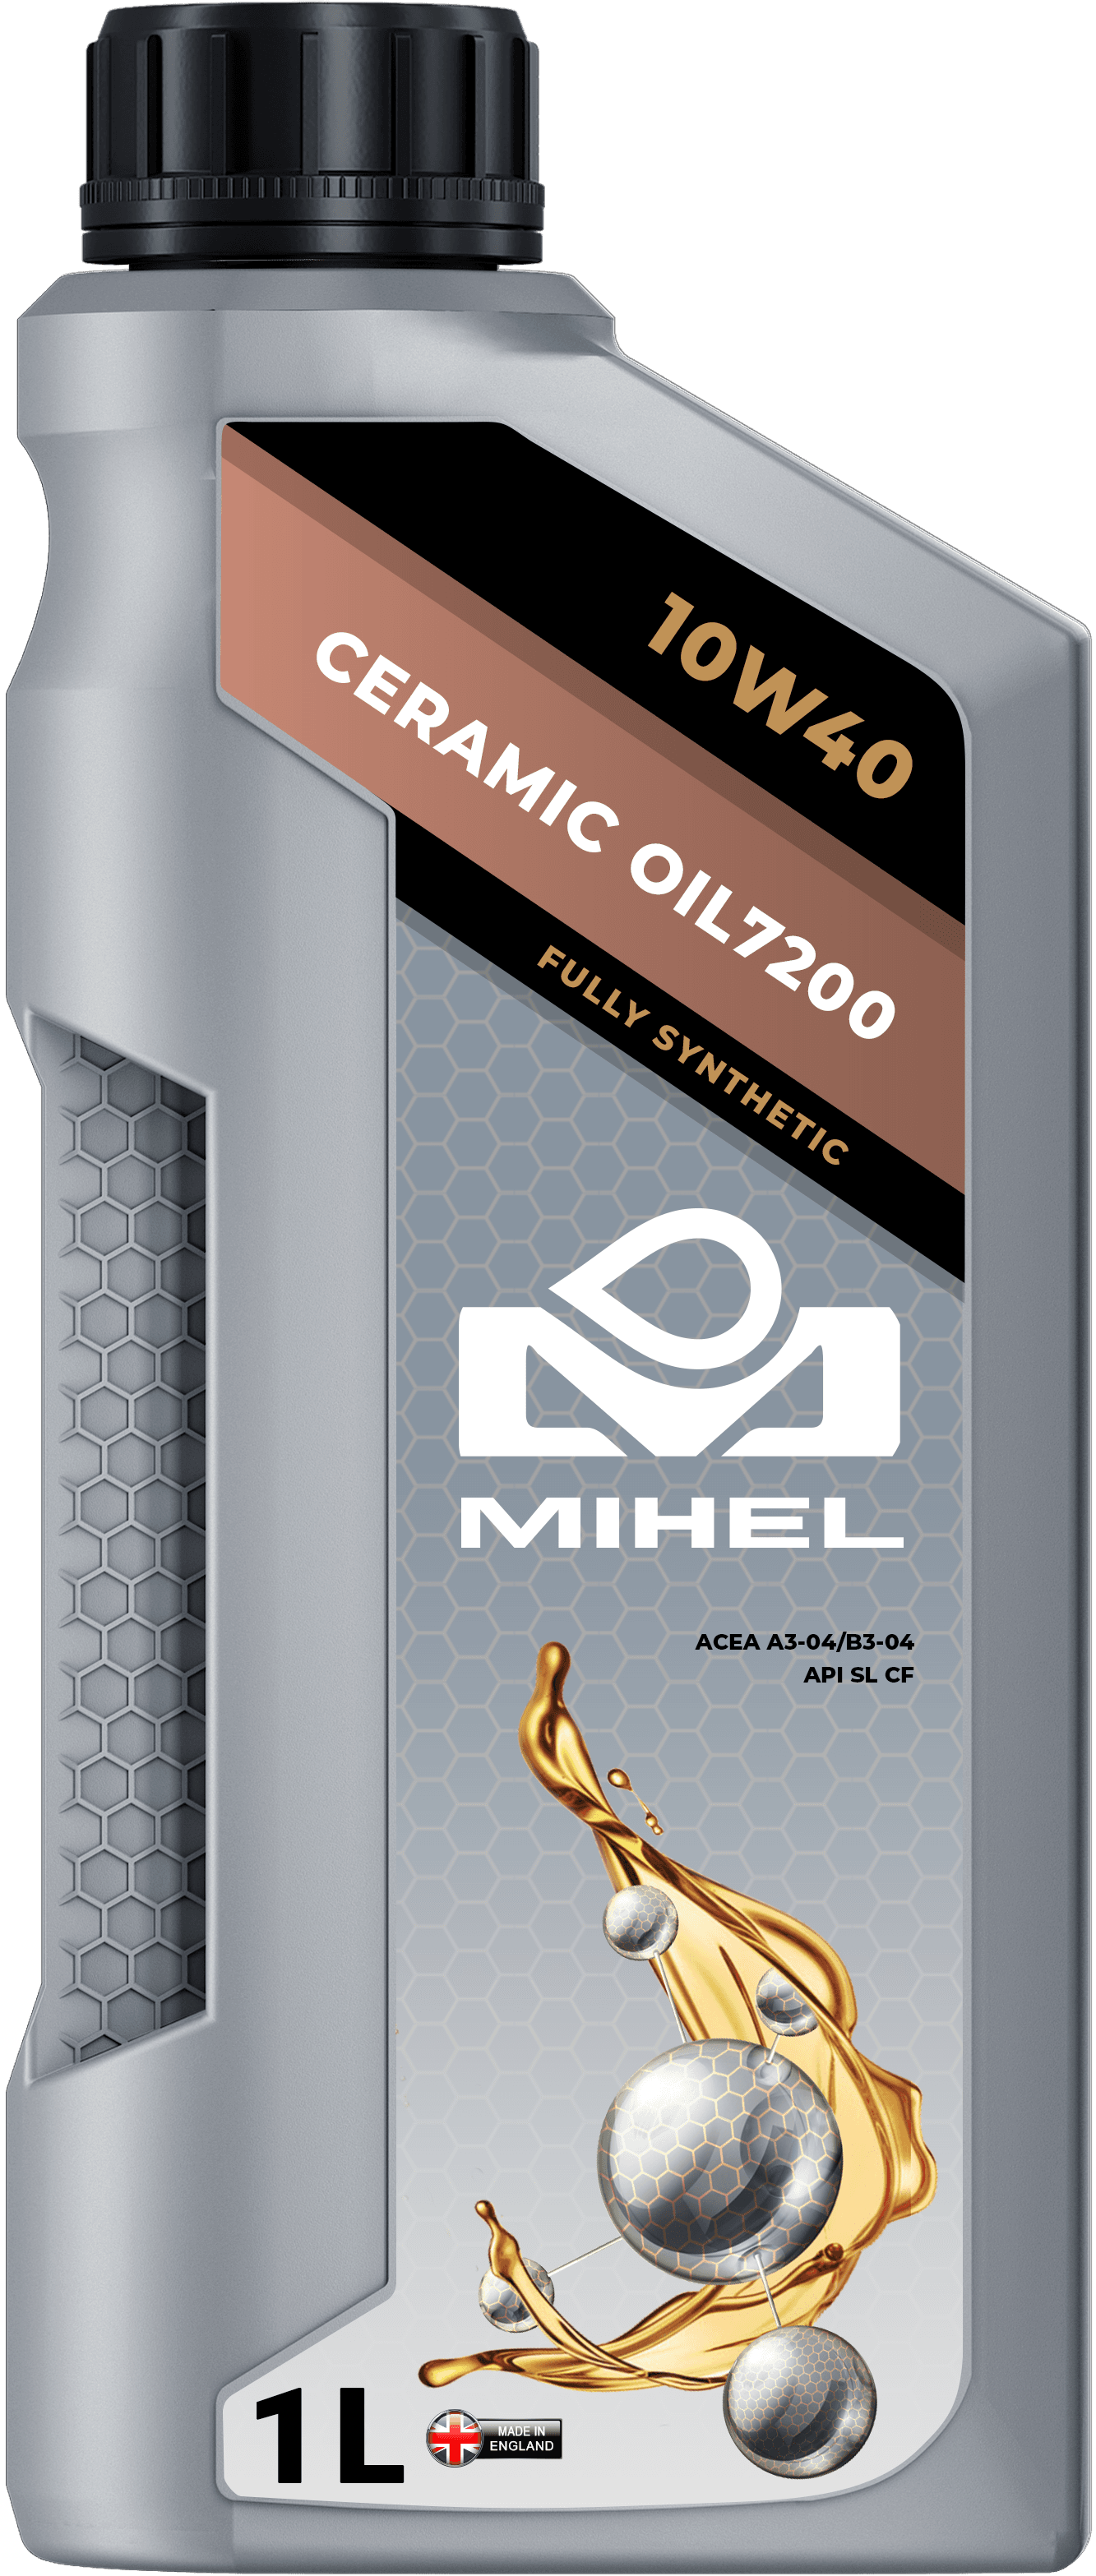 MIHEL Ceramic Oil® 7200 10W40